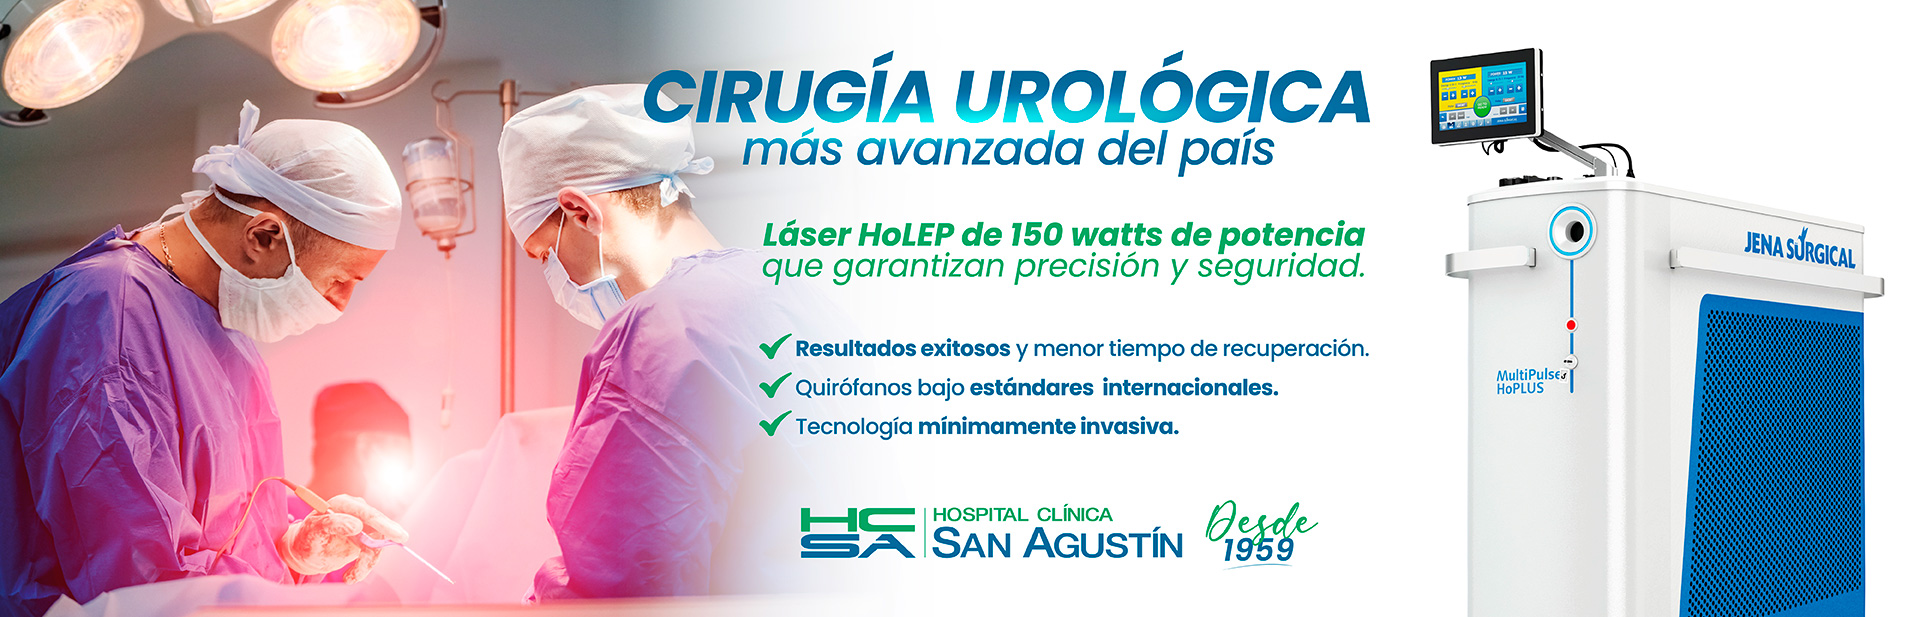 Cirugía Urológica | Hospital Clínica San Agustín